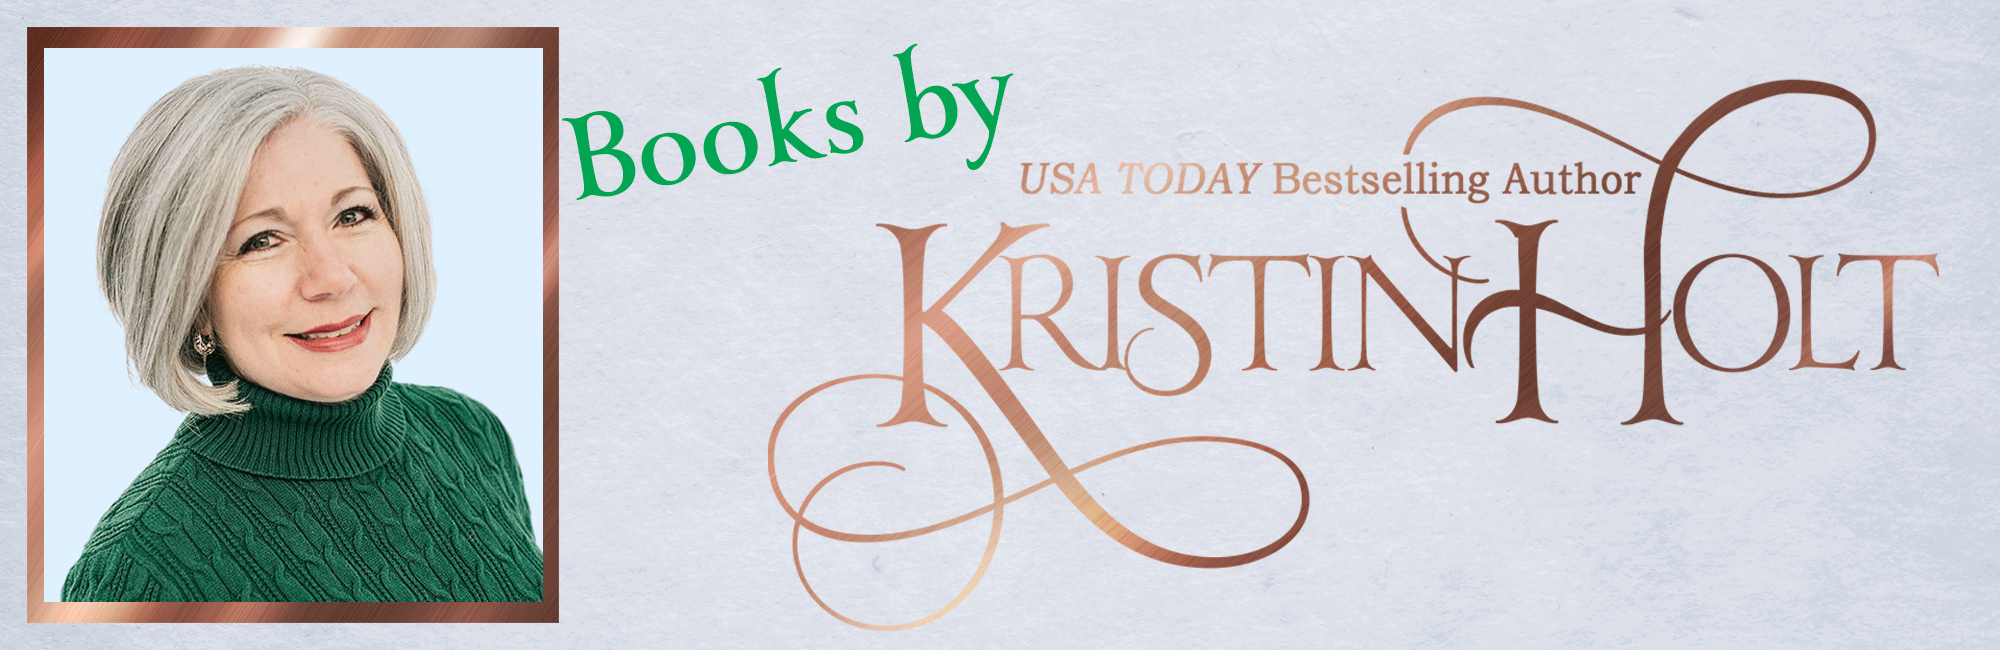 Kristin Holt | Books by Kristin Holt